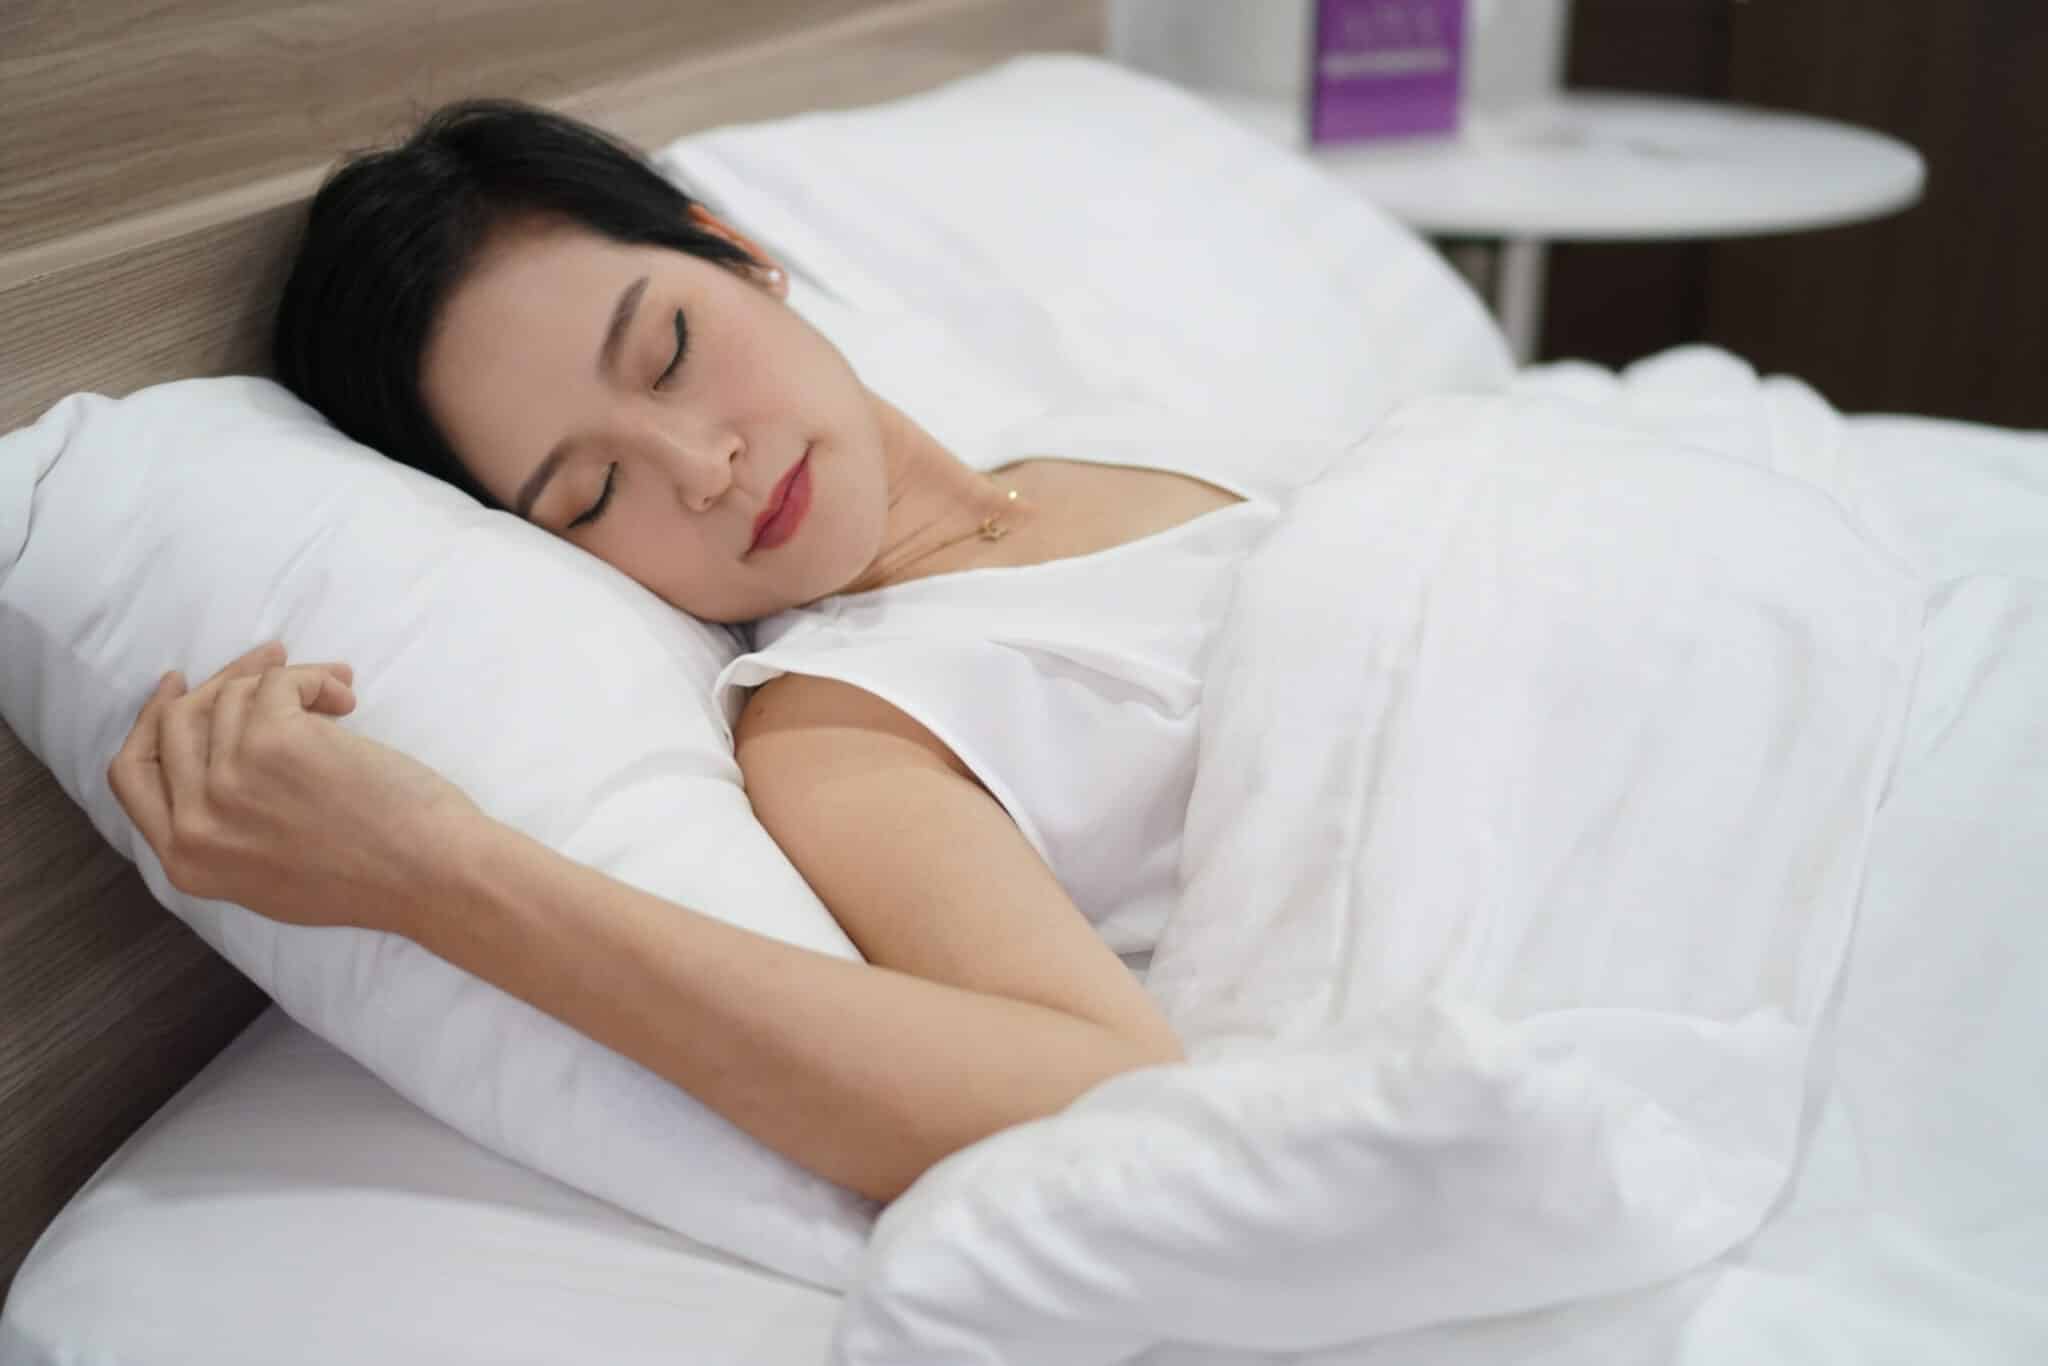 นอนกรน, เลเซอร์แก้นอนกรน, รักษาอาการกรน, เลเซอร์นอนกรน, วิธีแก้การนอนกรนผู้หญิง, แก้อาการนอนกรนผู้หญิง